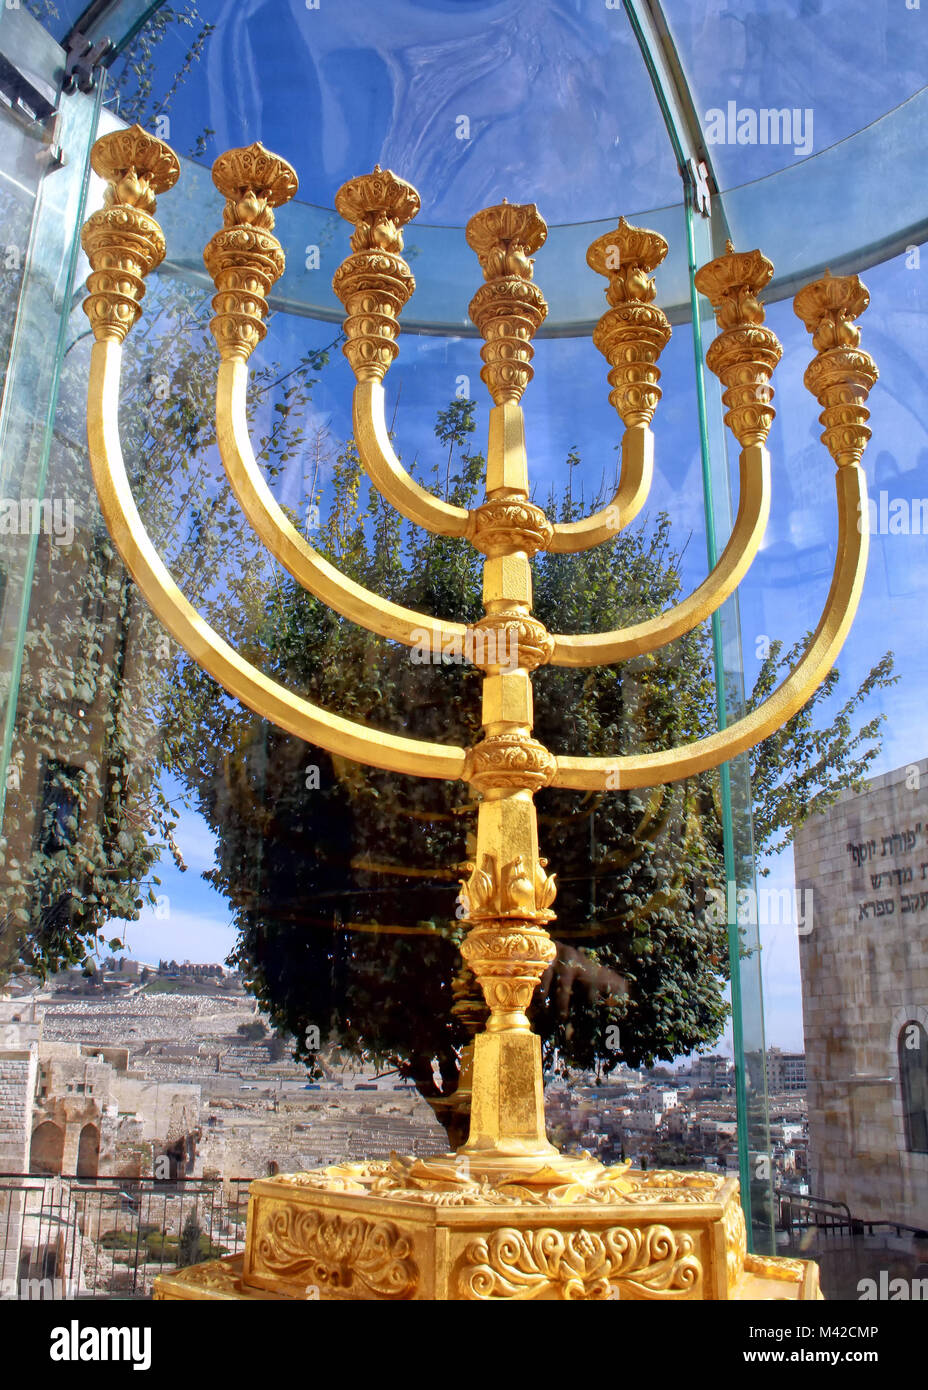 El Instituto del Templo menorah de oro se encuentra debajo de plexiglás en el barrio judío de la Ciudad Vieja de Jerusalén. Foto de stock